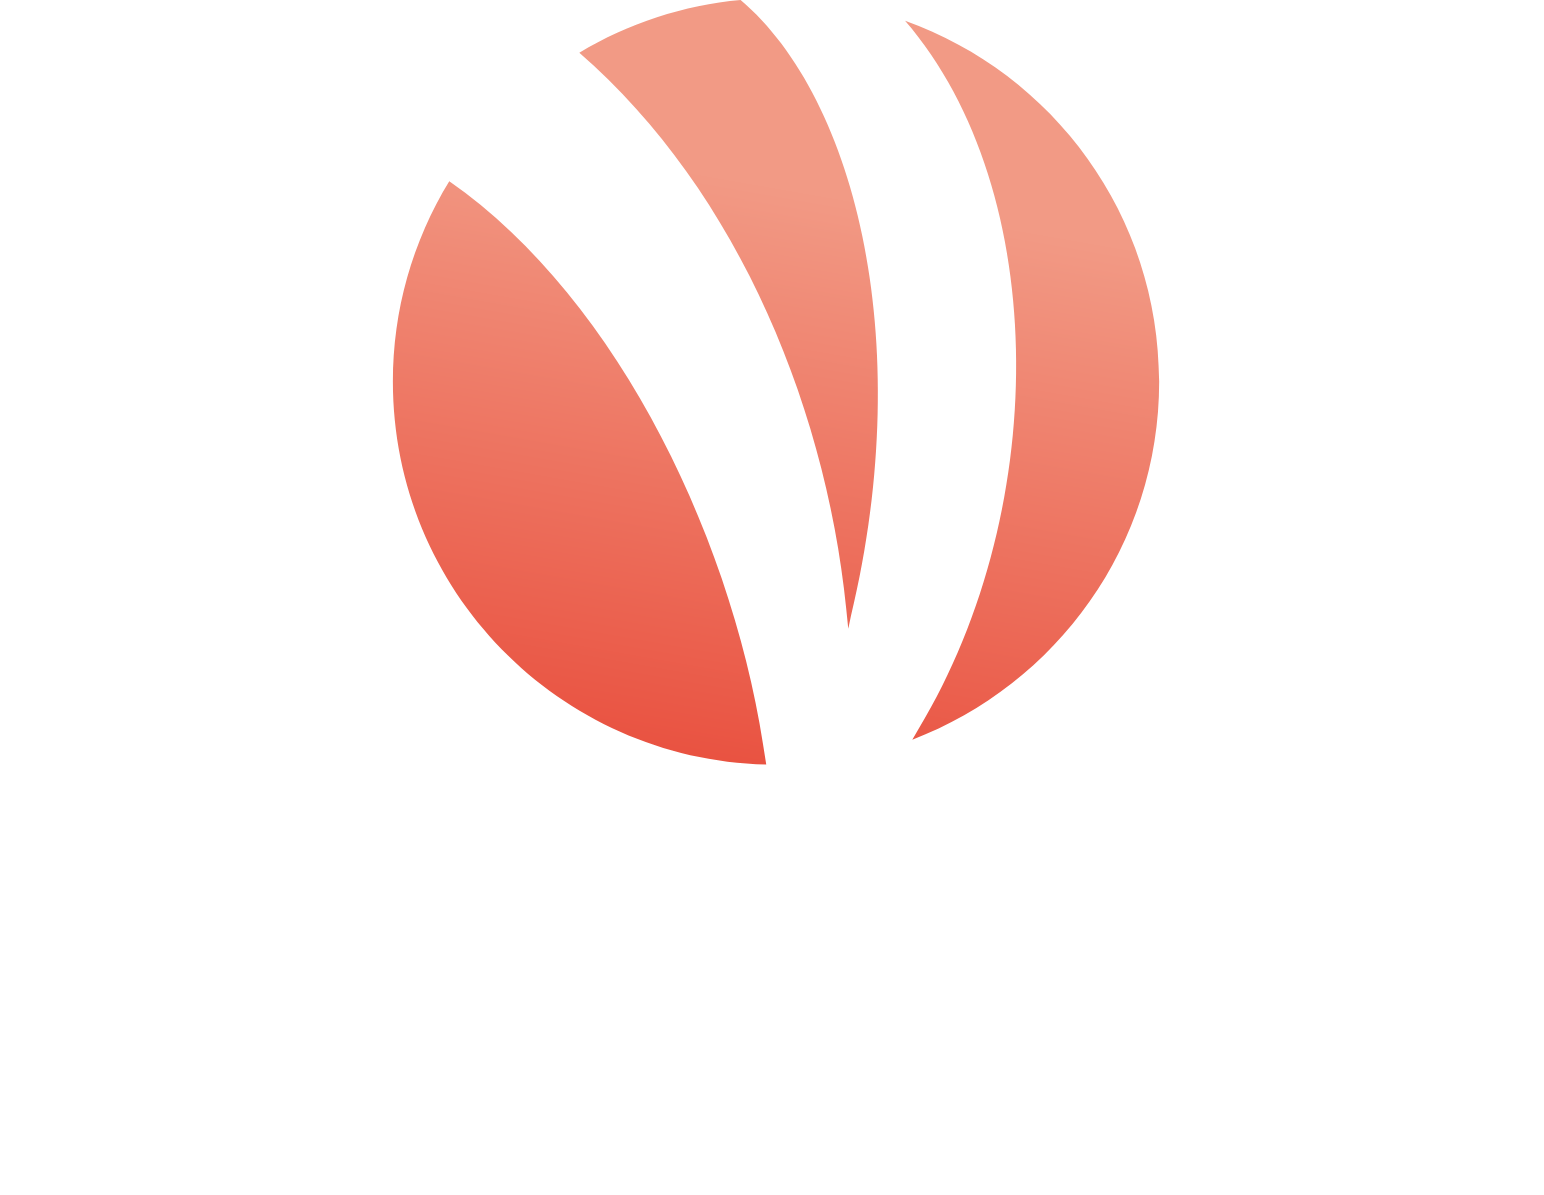 VolitionRx logo large for dark backgrounds (transparent PNG)